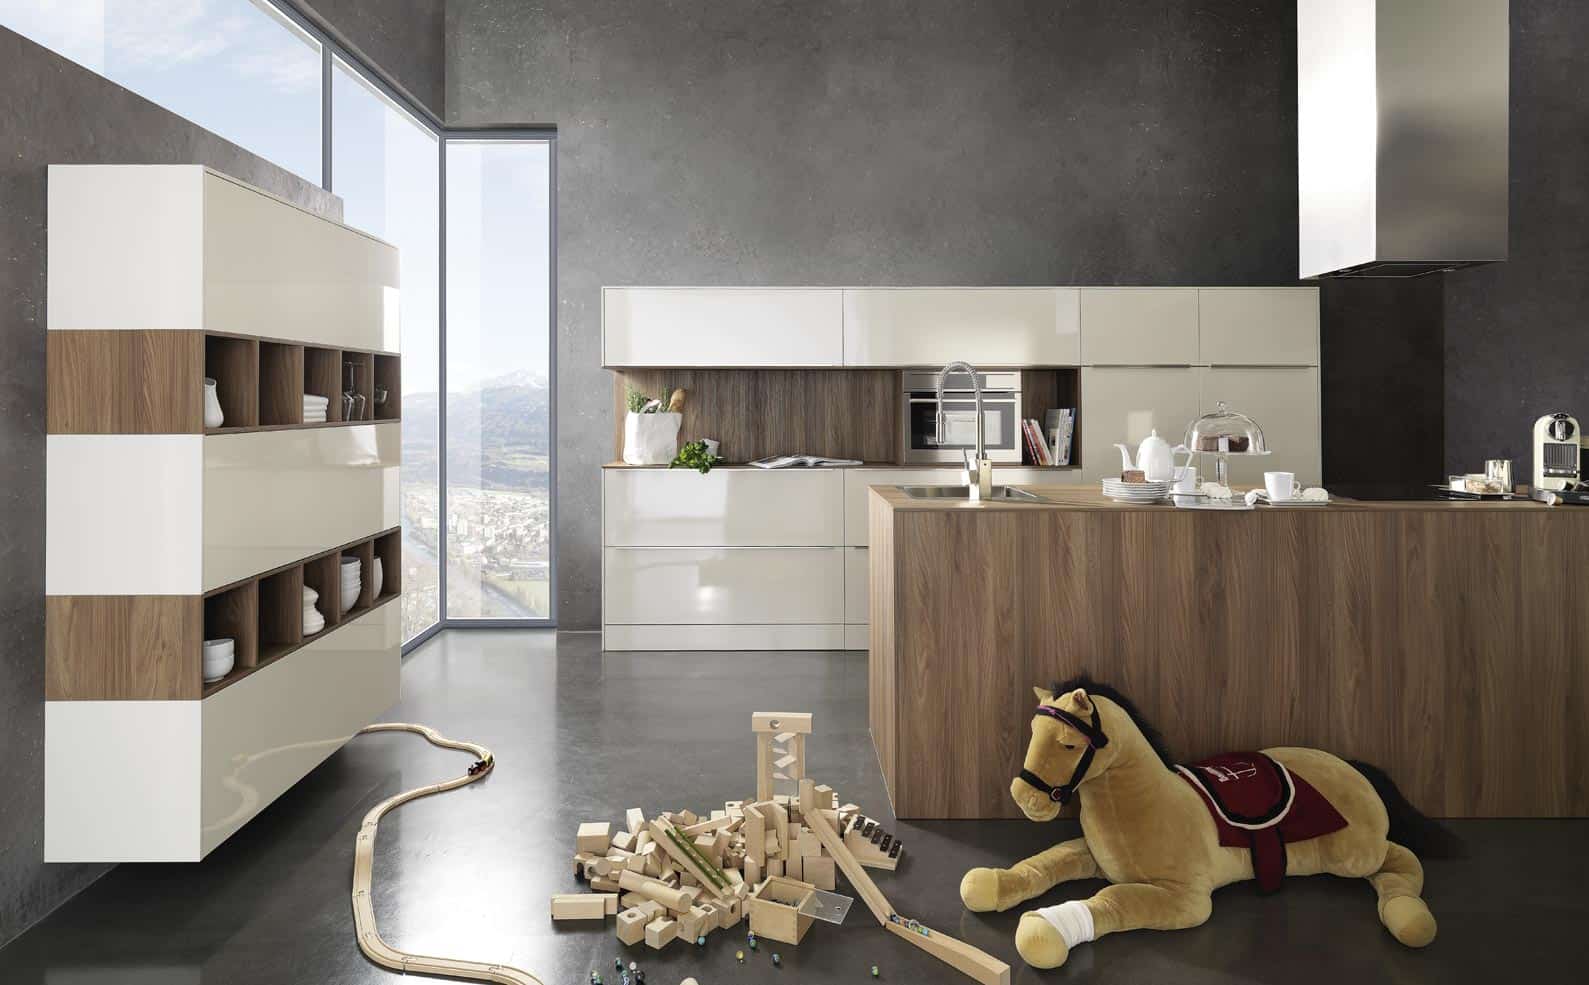 Küchenstudio Eine moderne Küche mit Holzschränken und einem hölzernen Teddybären.